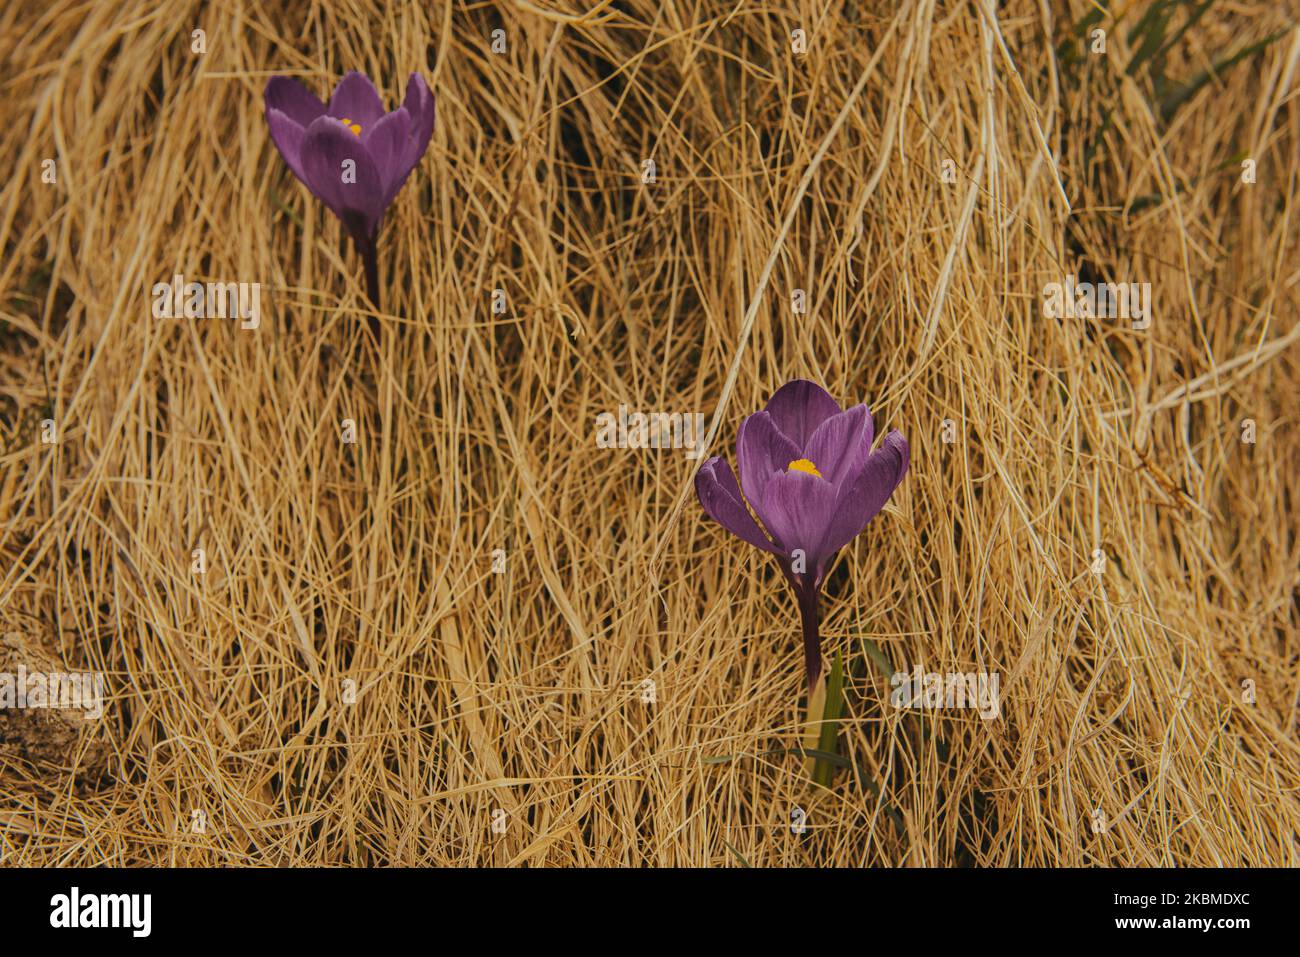 Tendre Crocus dans les montagnes. Premières fleurs au printemps parmi l'herbe jaune. Image avec une faible profondeur de champ. Fleur aux pétales violets Banque D'Images